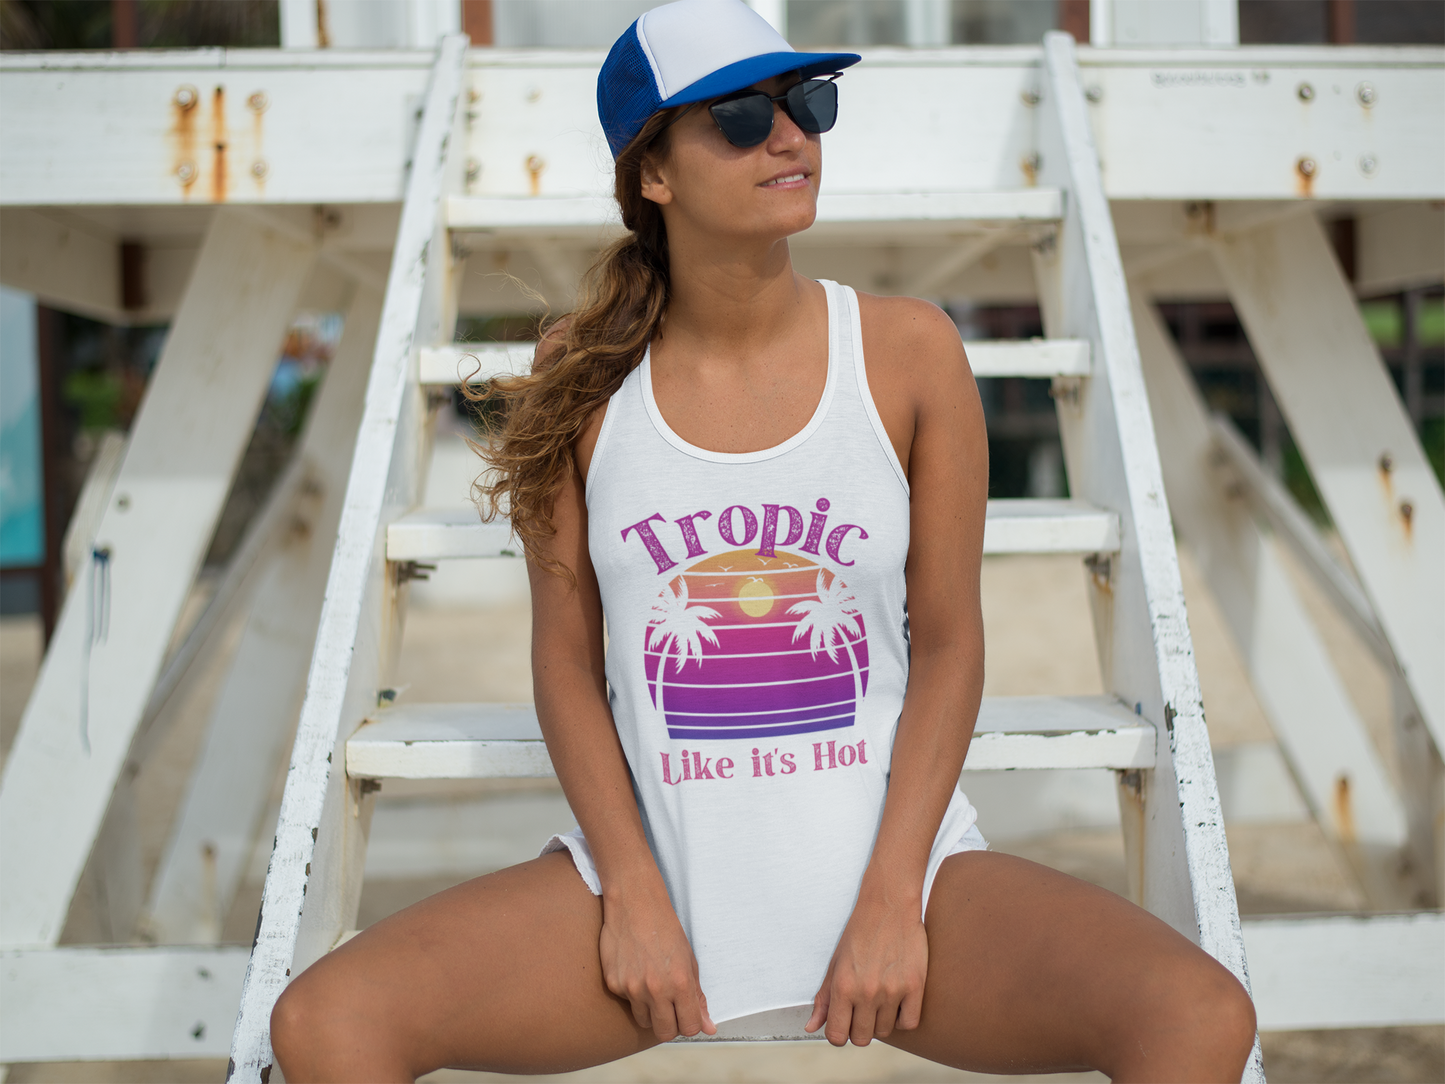 "Tropic Like It's Hot" Sunset Style | Women's Flowy Tank Top, Vacation Shirt, Beach Shirt, Summer Shirt,